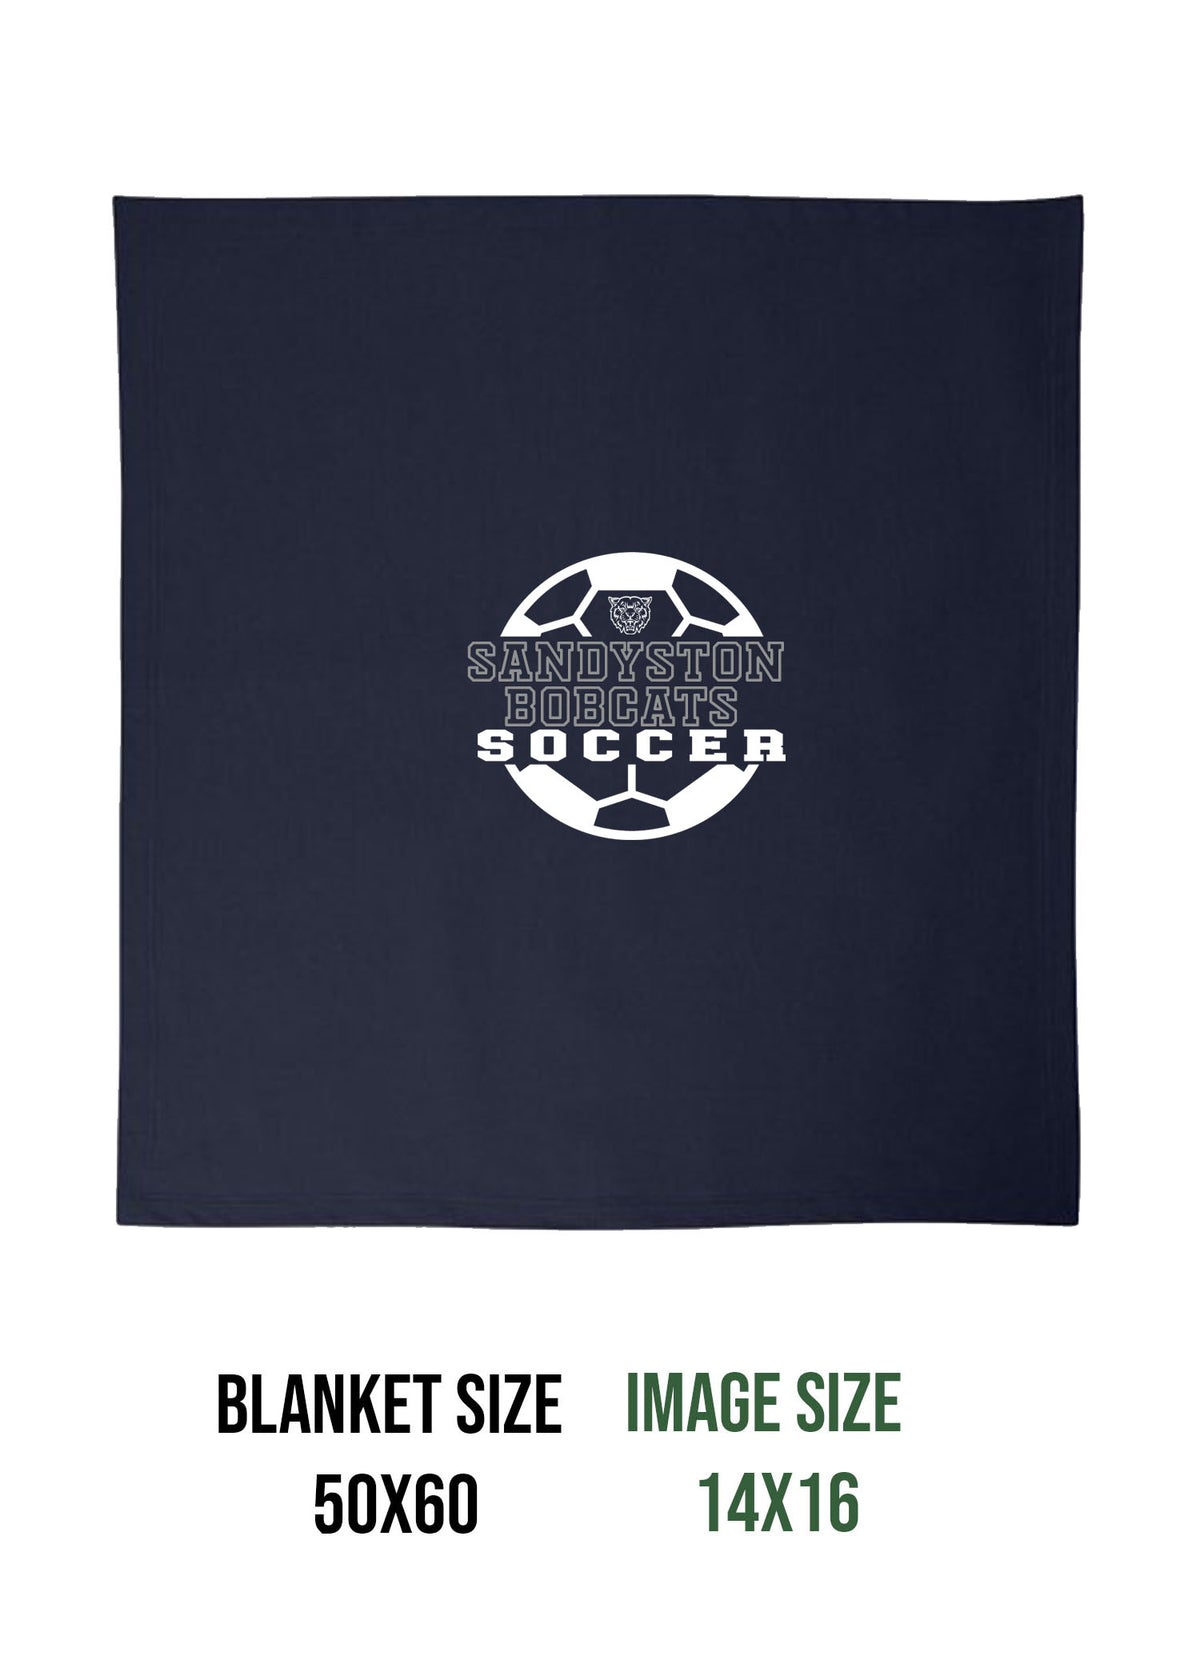 Sandyston Soccer Design 2 Blanket